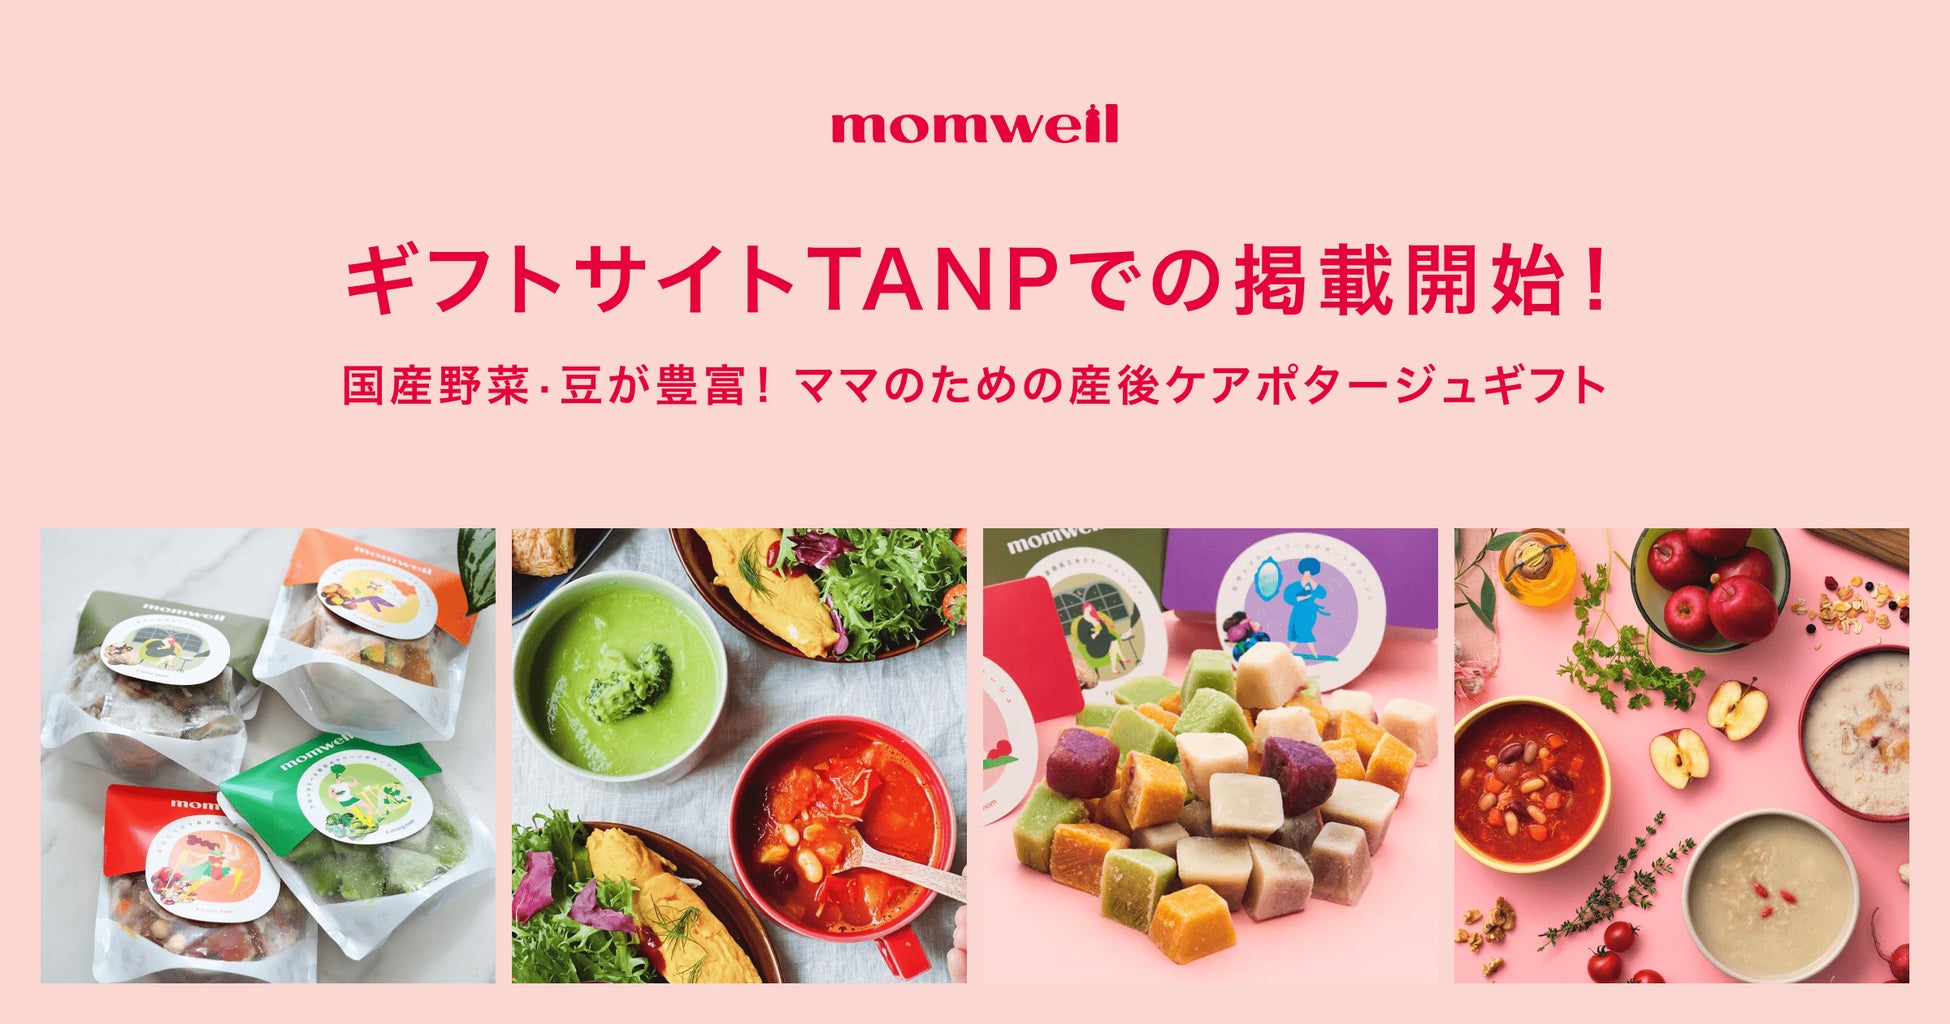 ママのためのウェルネスブランド「momwell」がギフトEC『TANP』での販売を開始